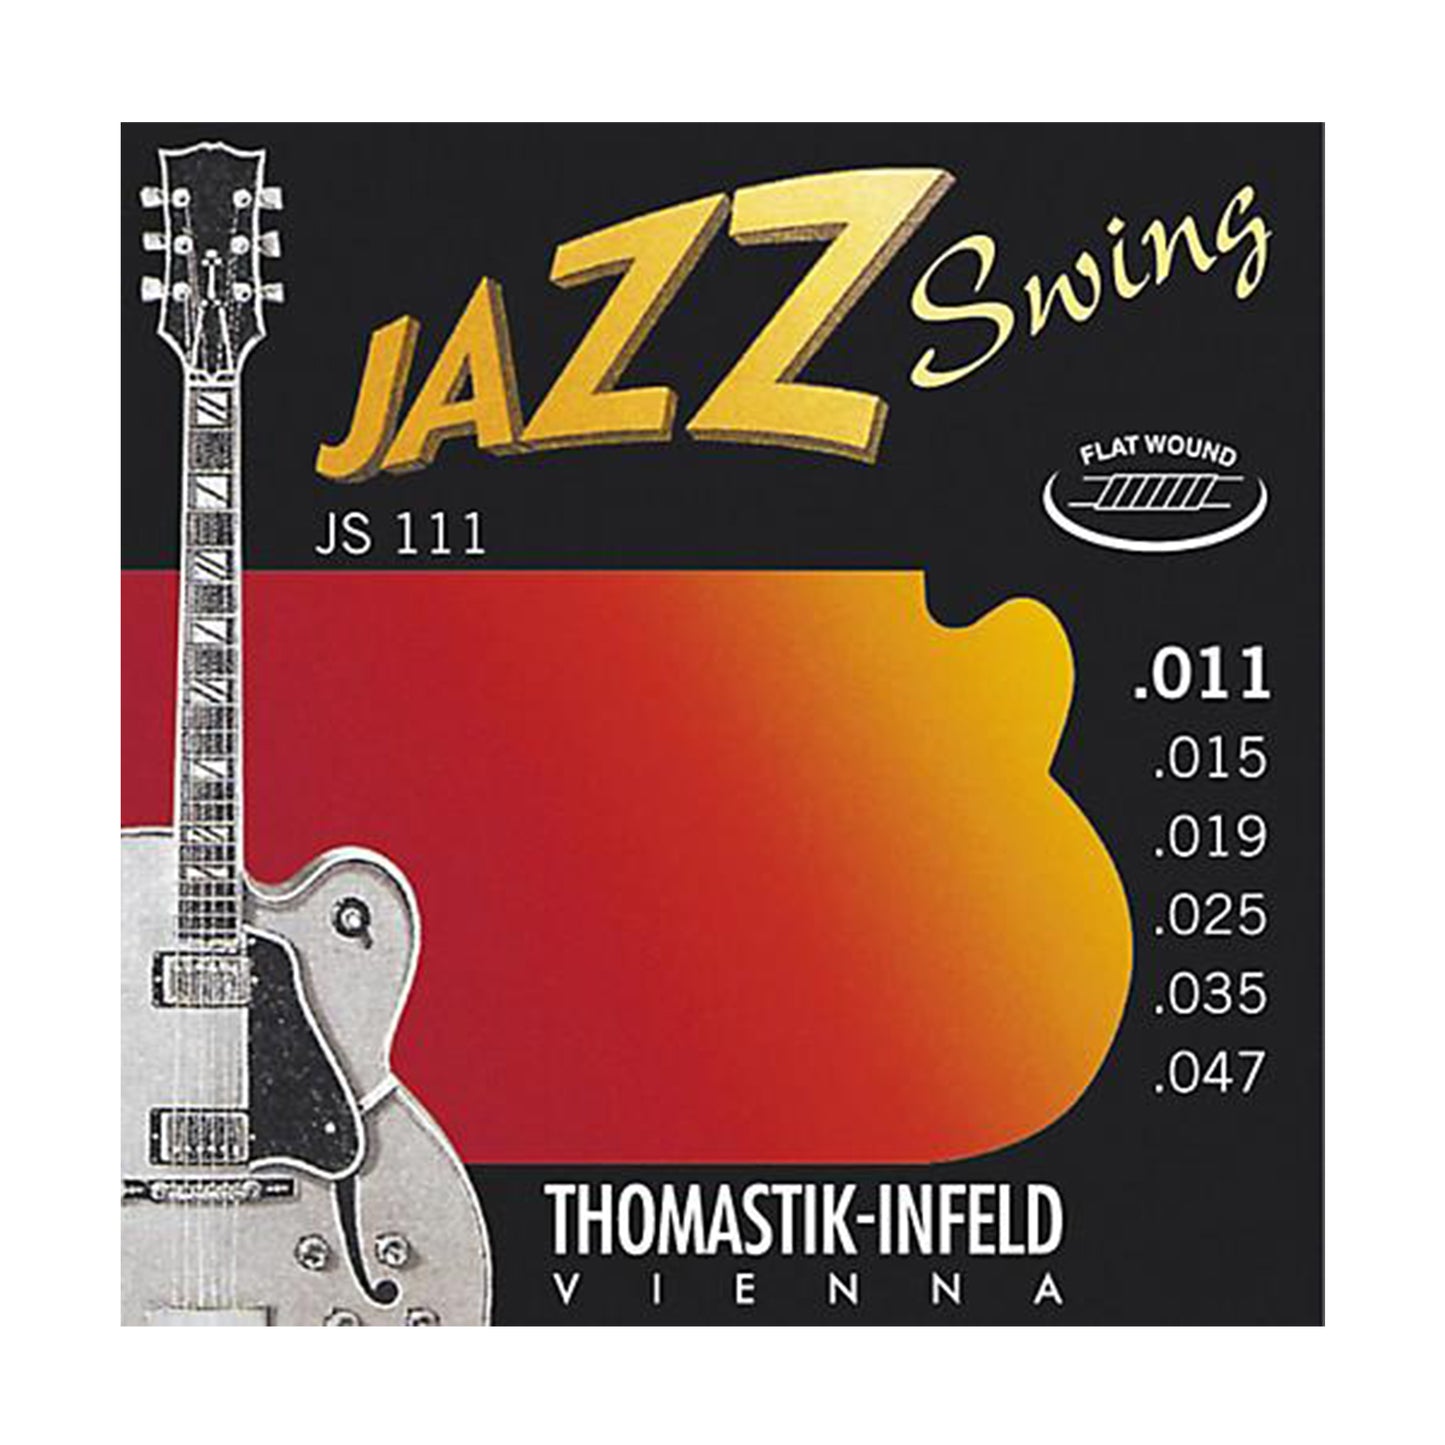 Thomastik Jazz Swing Flat Wound Electric Guitar Strings